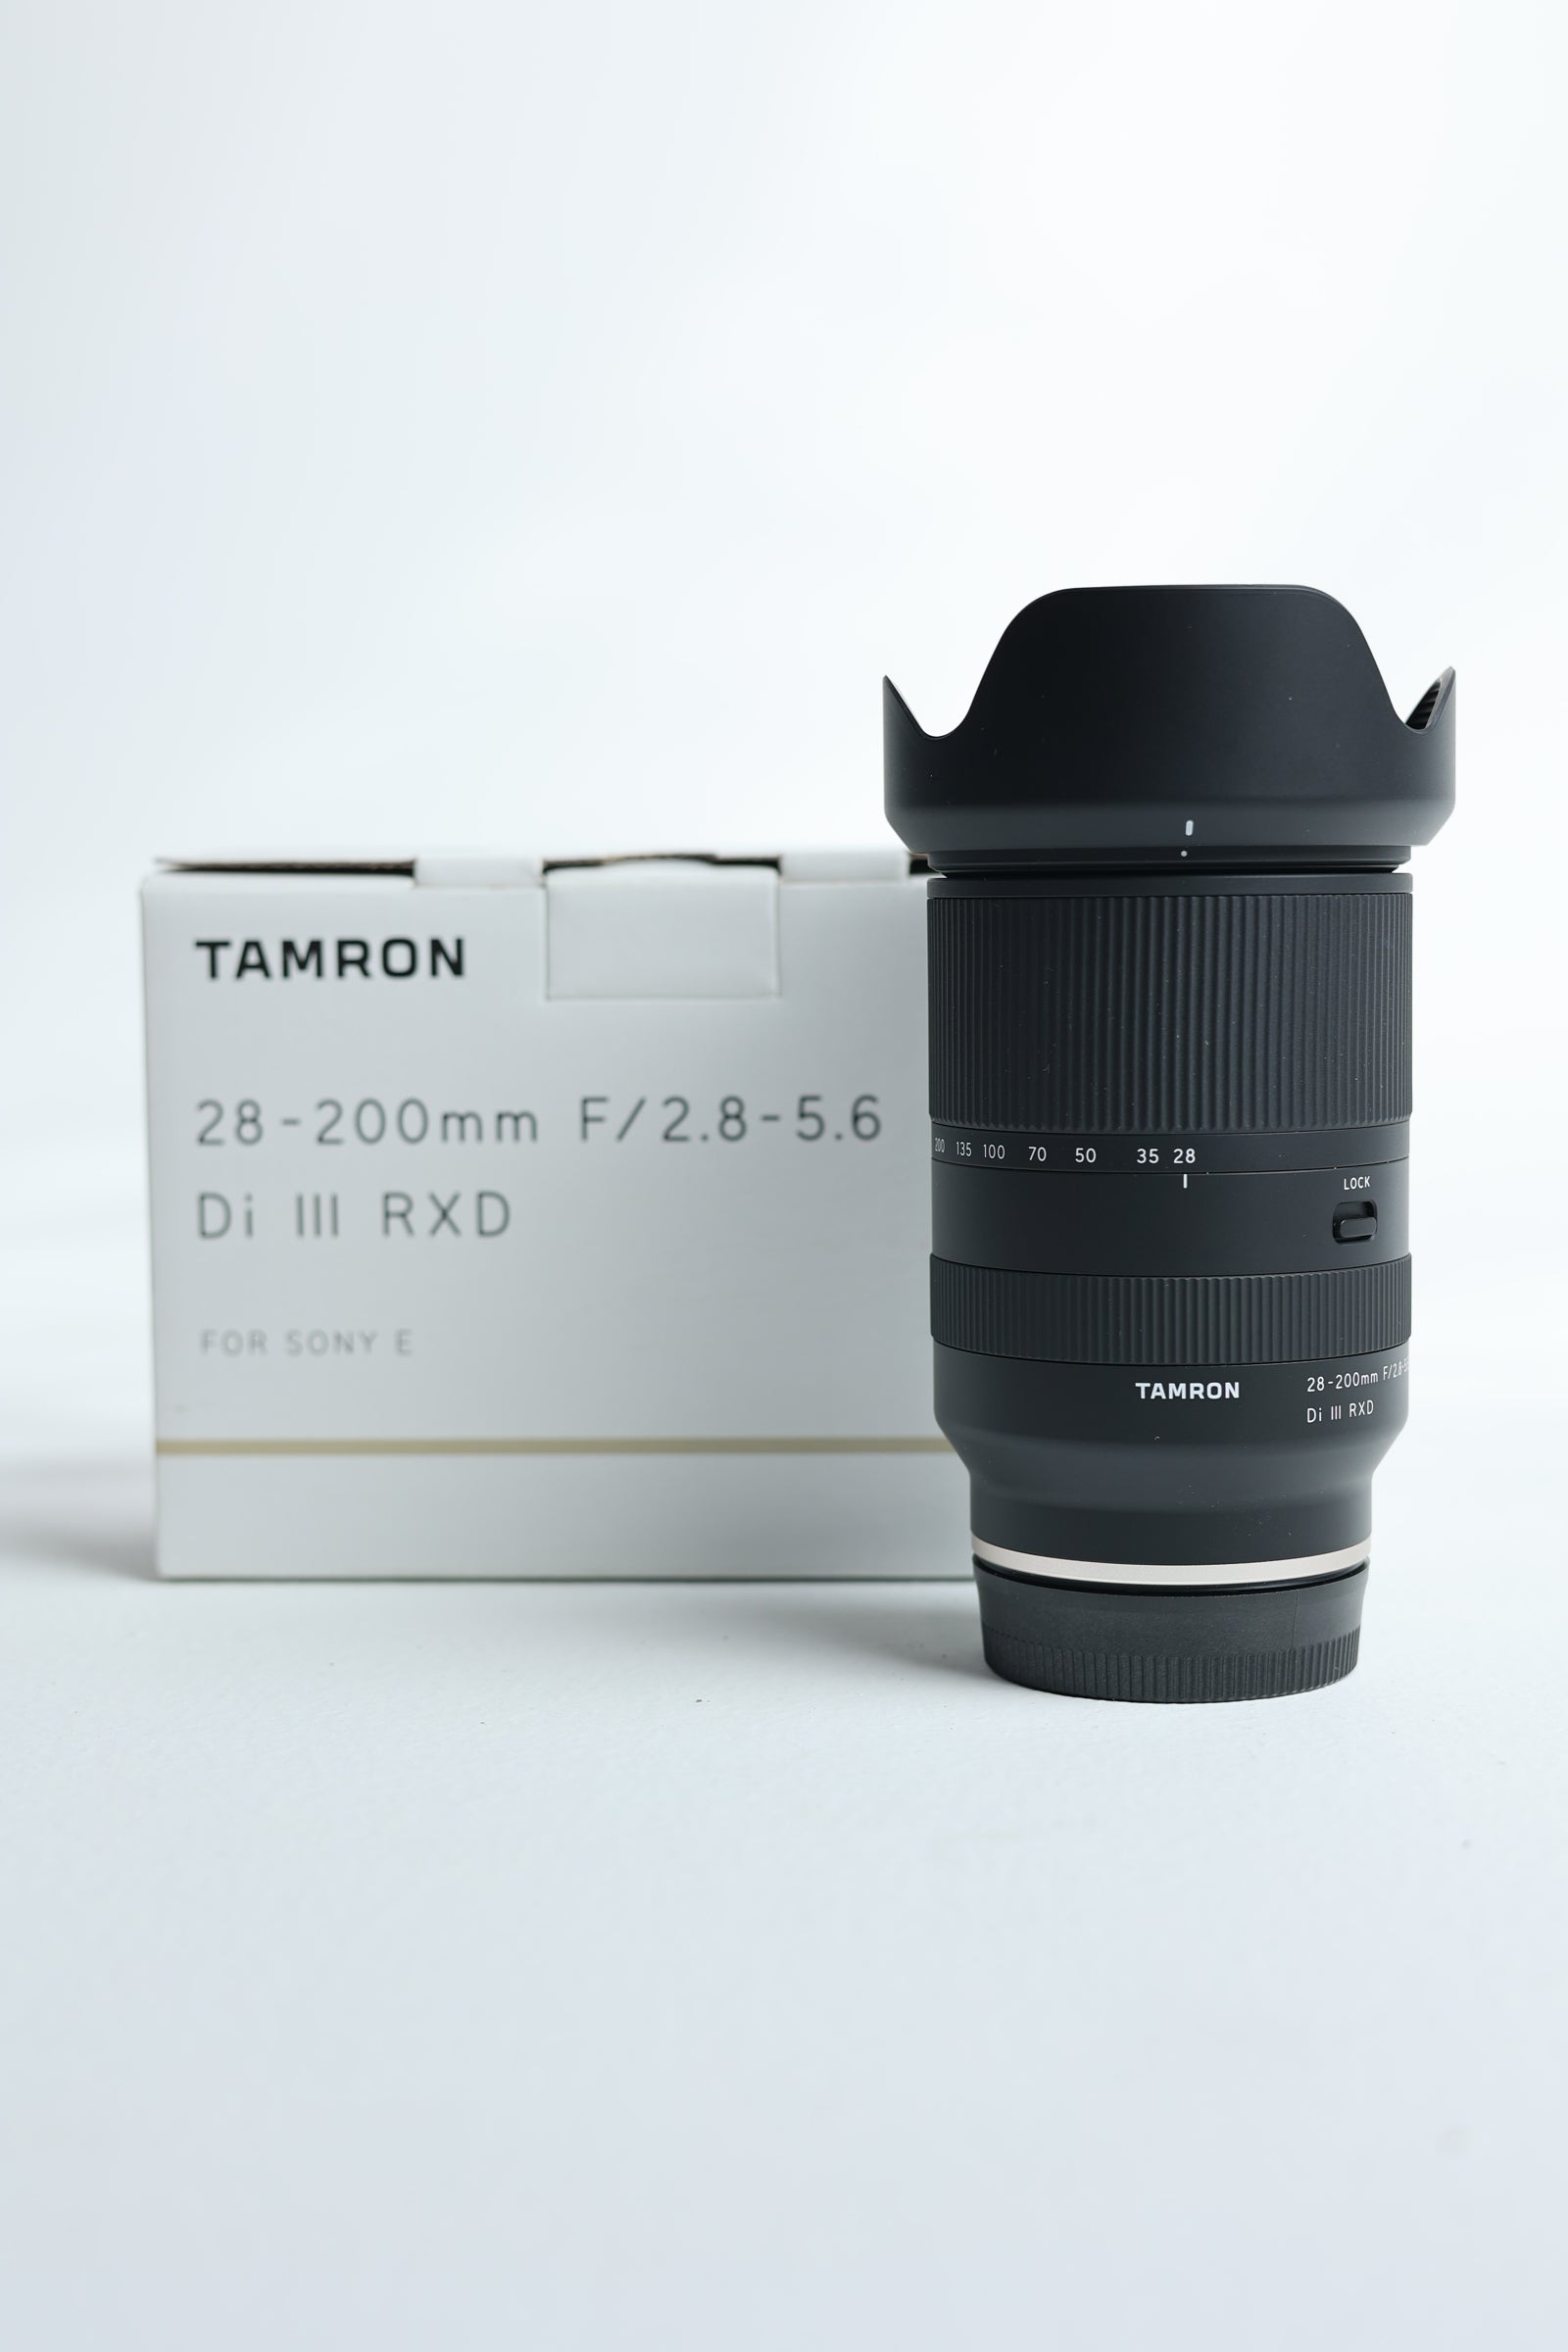 Tamron 28200S/98196 28-200mm f/2.8-5.6 Di III RXD F/Sony, Used